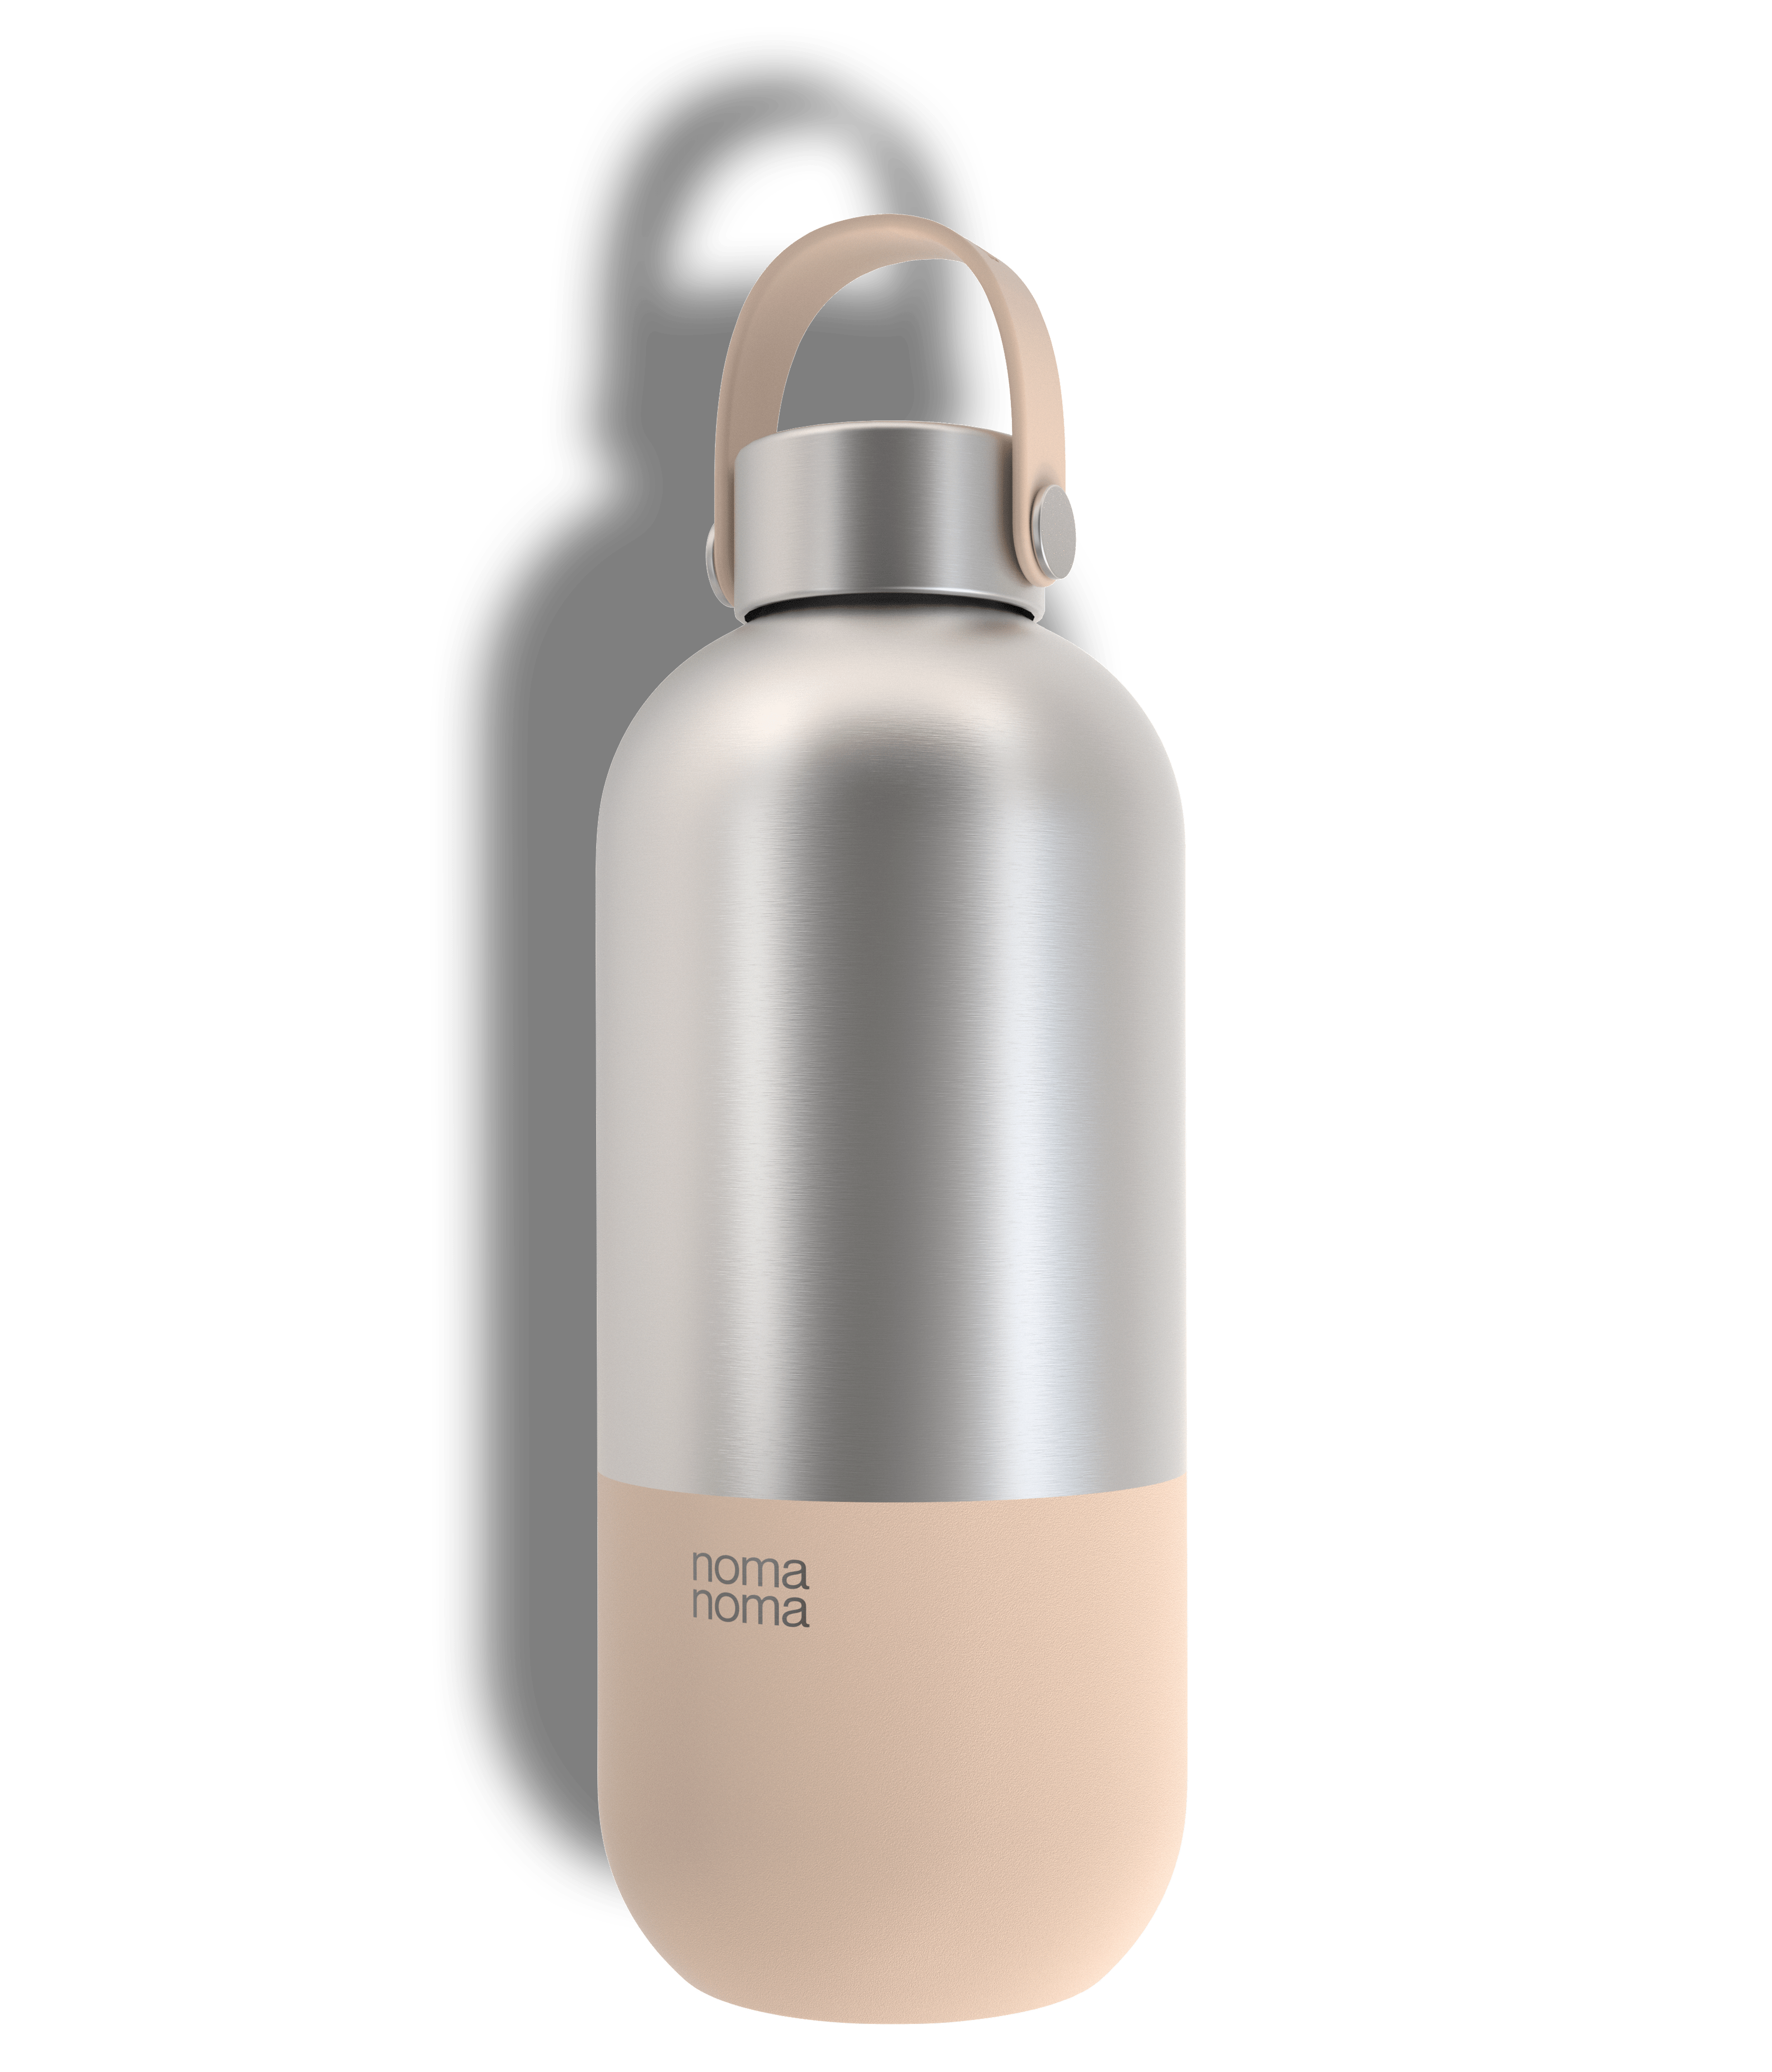 Die noma noma Thermotrinkflasche in drei Größen und verschiedenen Farben